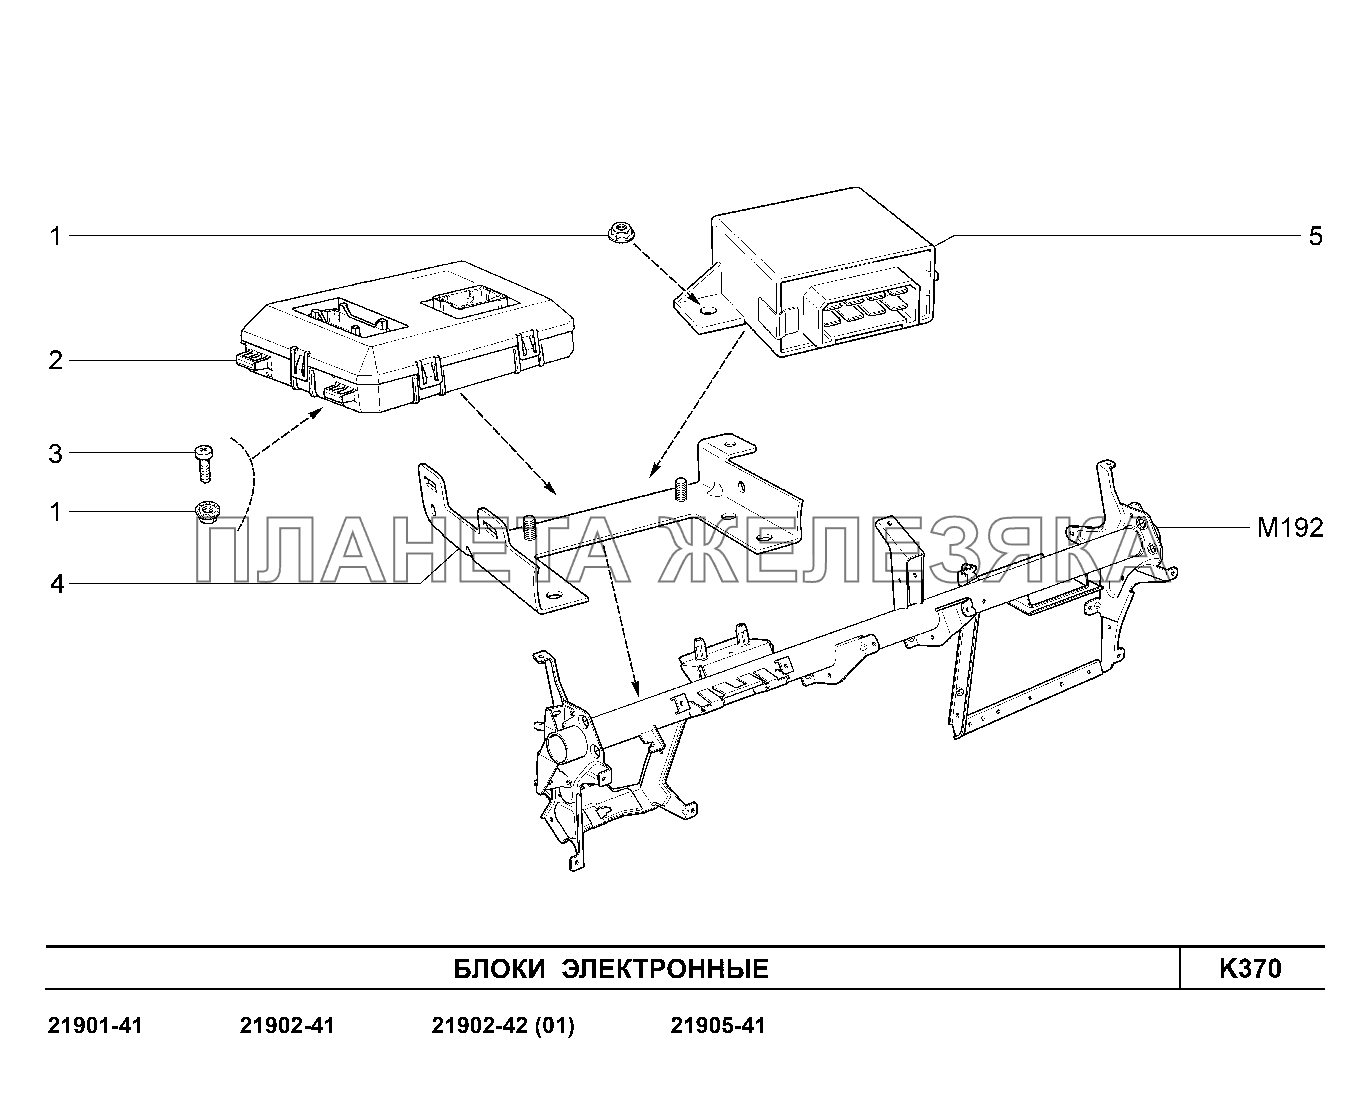 K370. Блоки электронные Lada Granta-2190